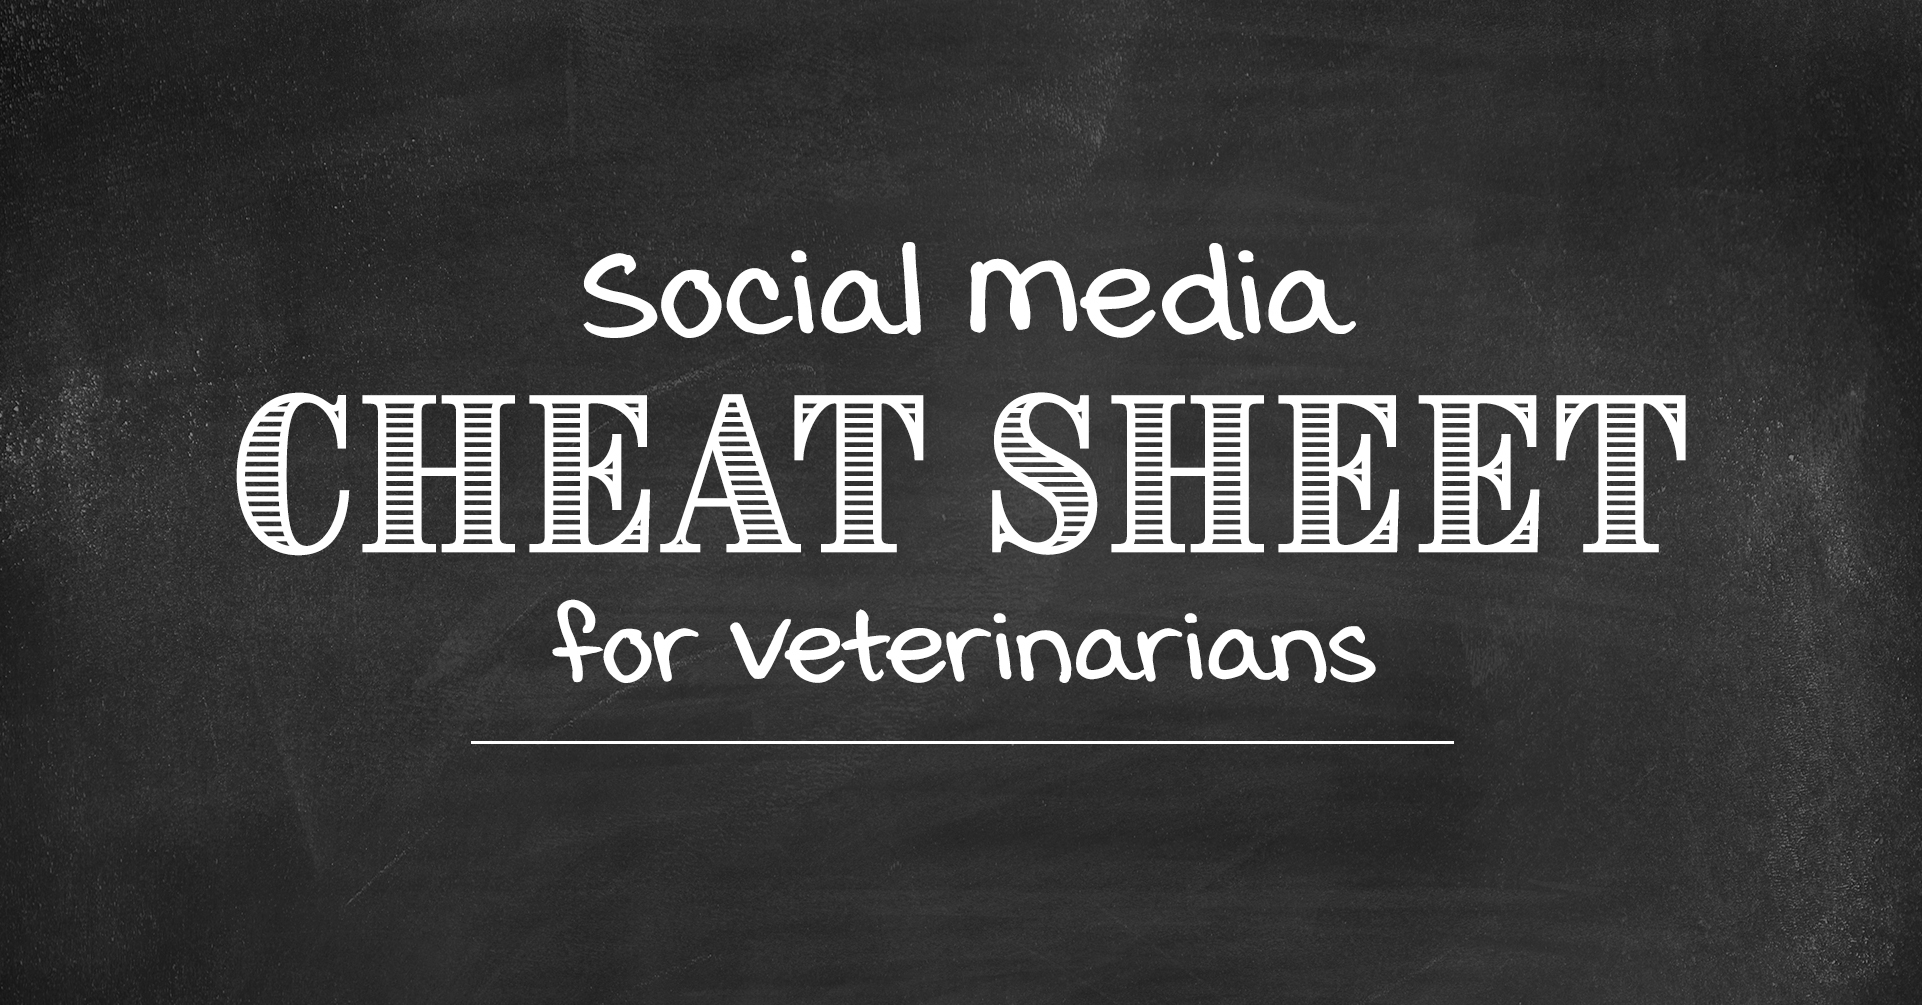 Social Media Cheat Sheet for Veterinarians